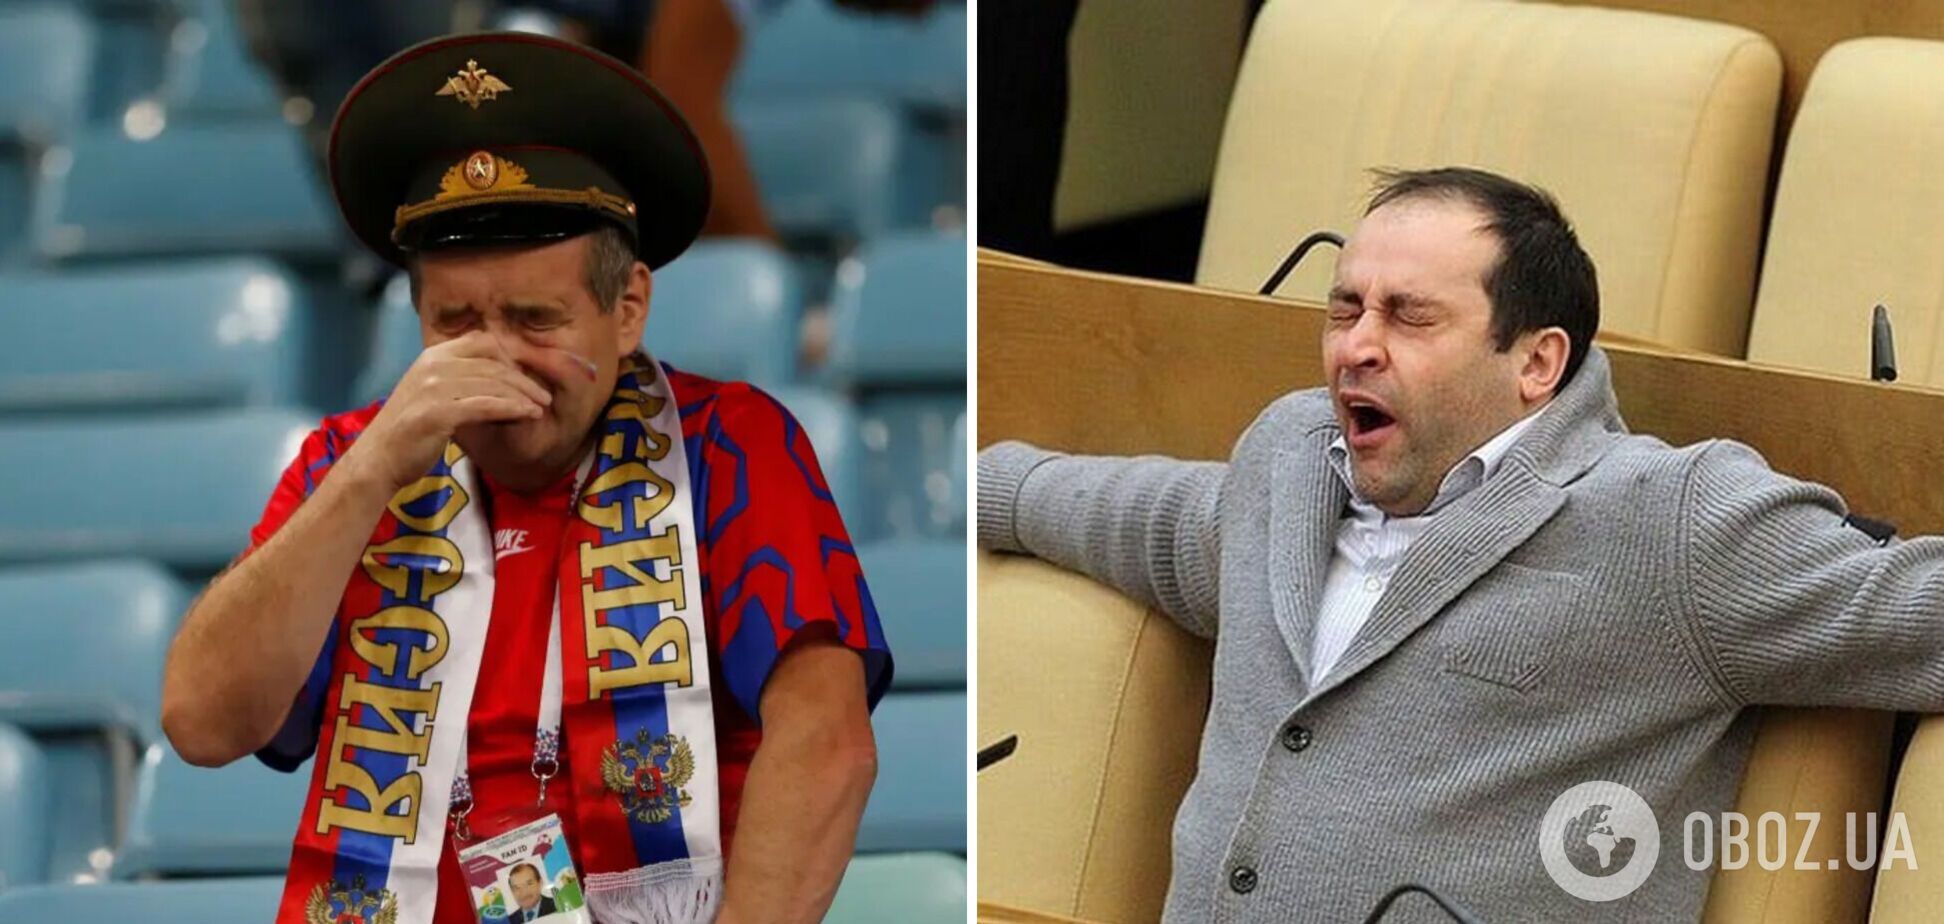 'Обычная зависть': в Госдуме выдали бред о том, что украинские спортсмены боятся россиян